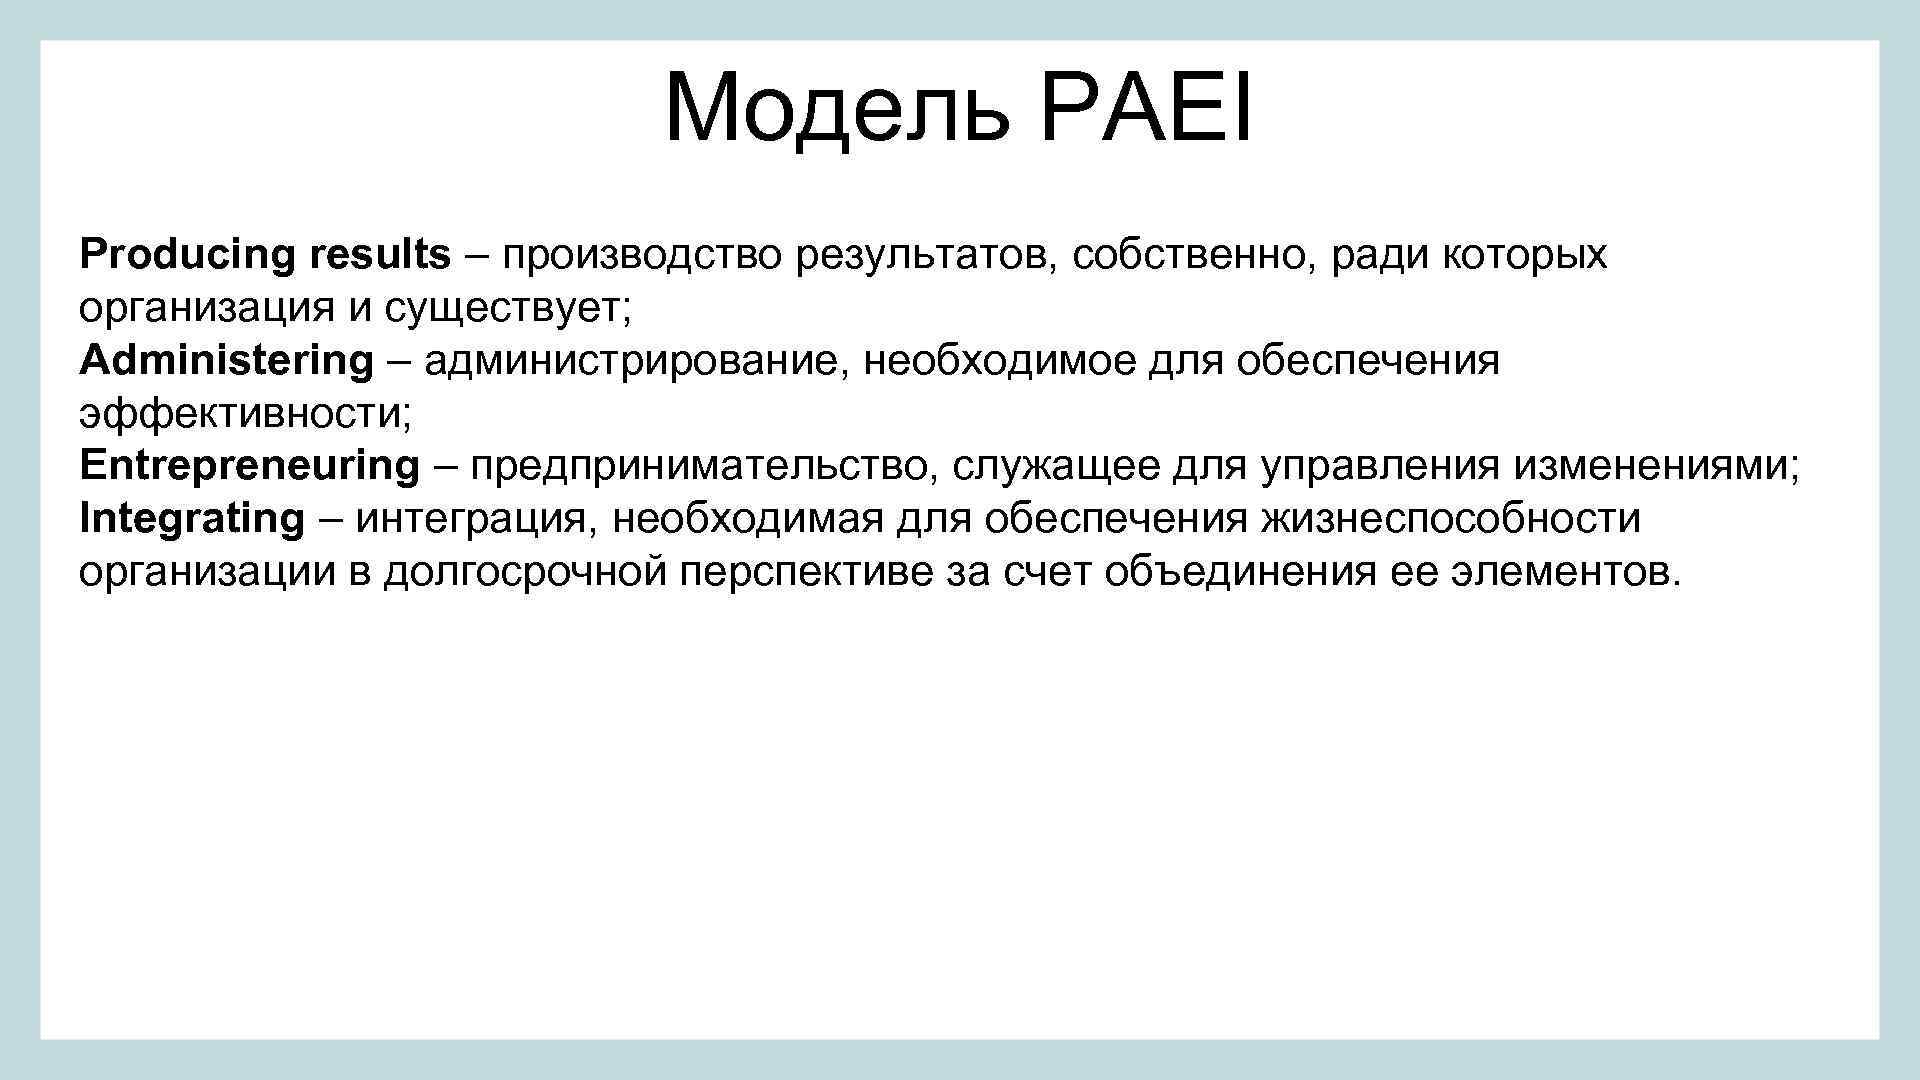 Produce results. Модель paei. Производитель результатов. Адизес типы личности. Производство результатов (producing Results).